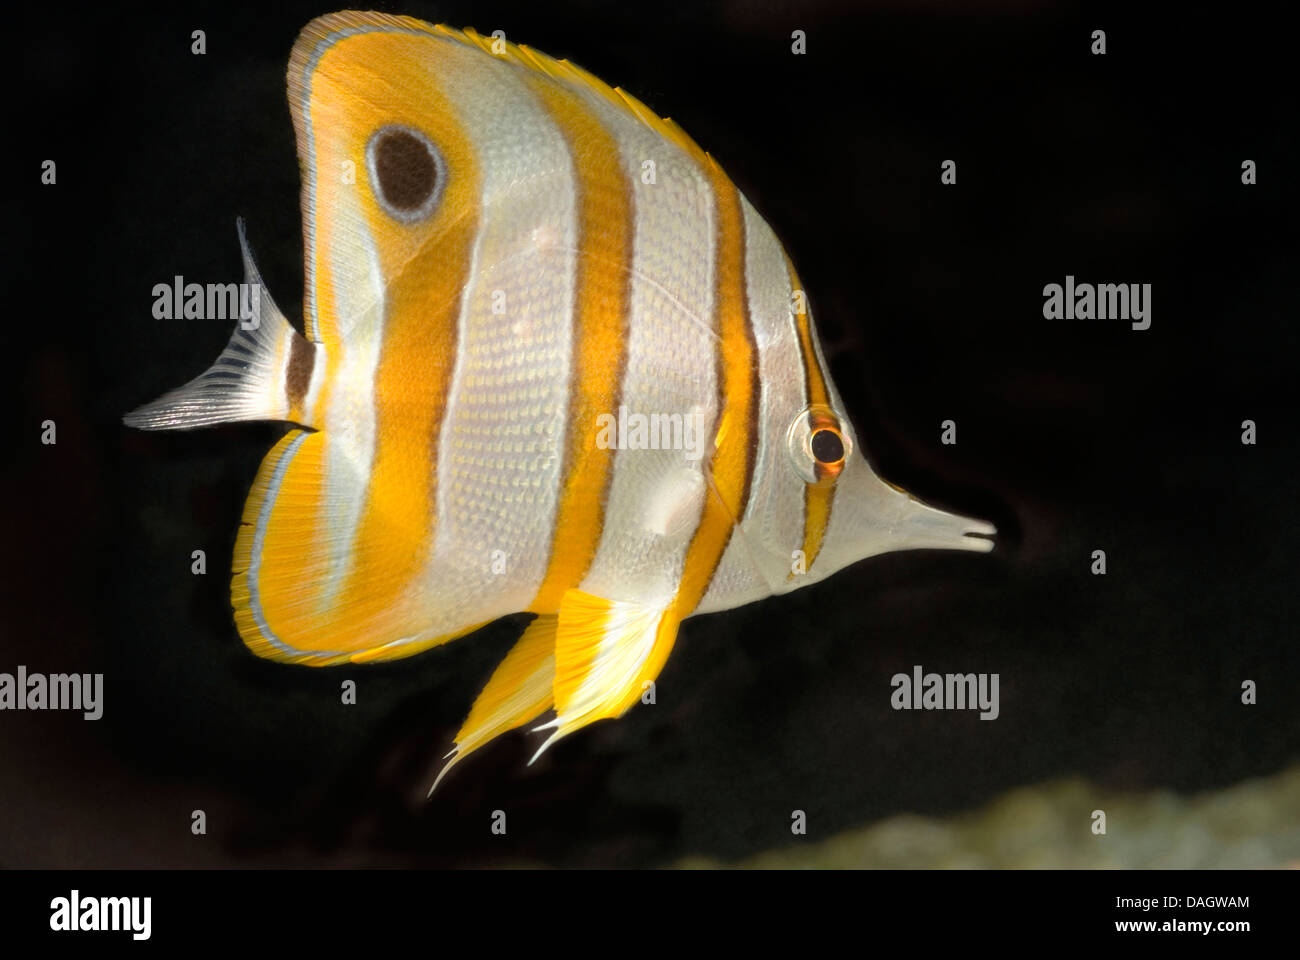 Les bandes de cuivre chelmon à bec médiocre, médiocre, médiocre, long bec beaked coralfish Chelmon Rostratus) (piscine, Banque D'Images